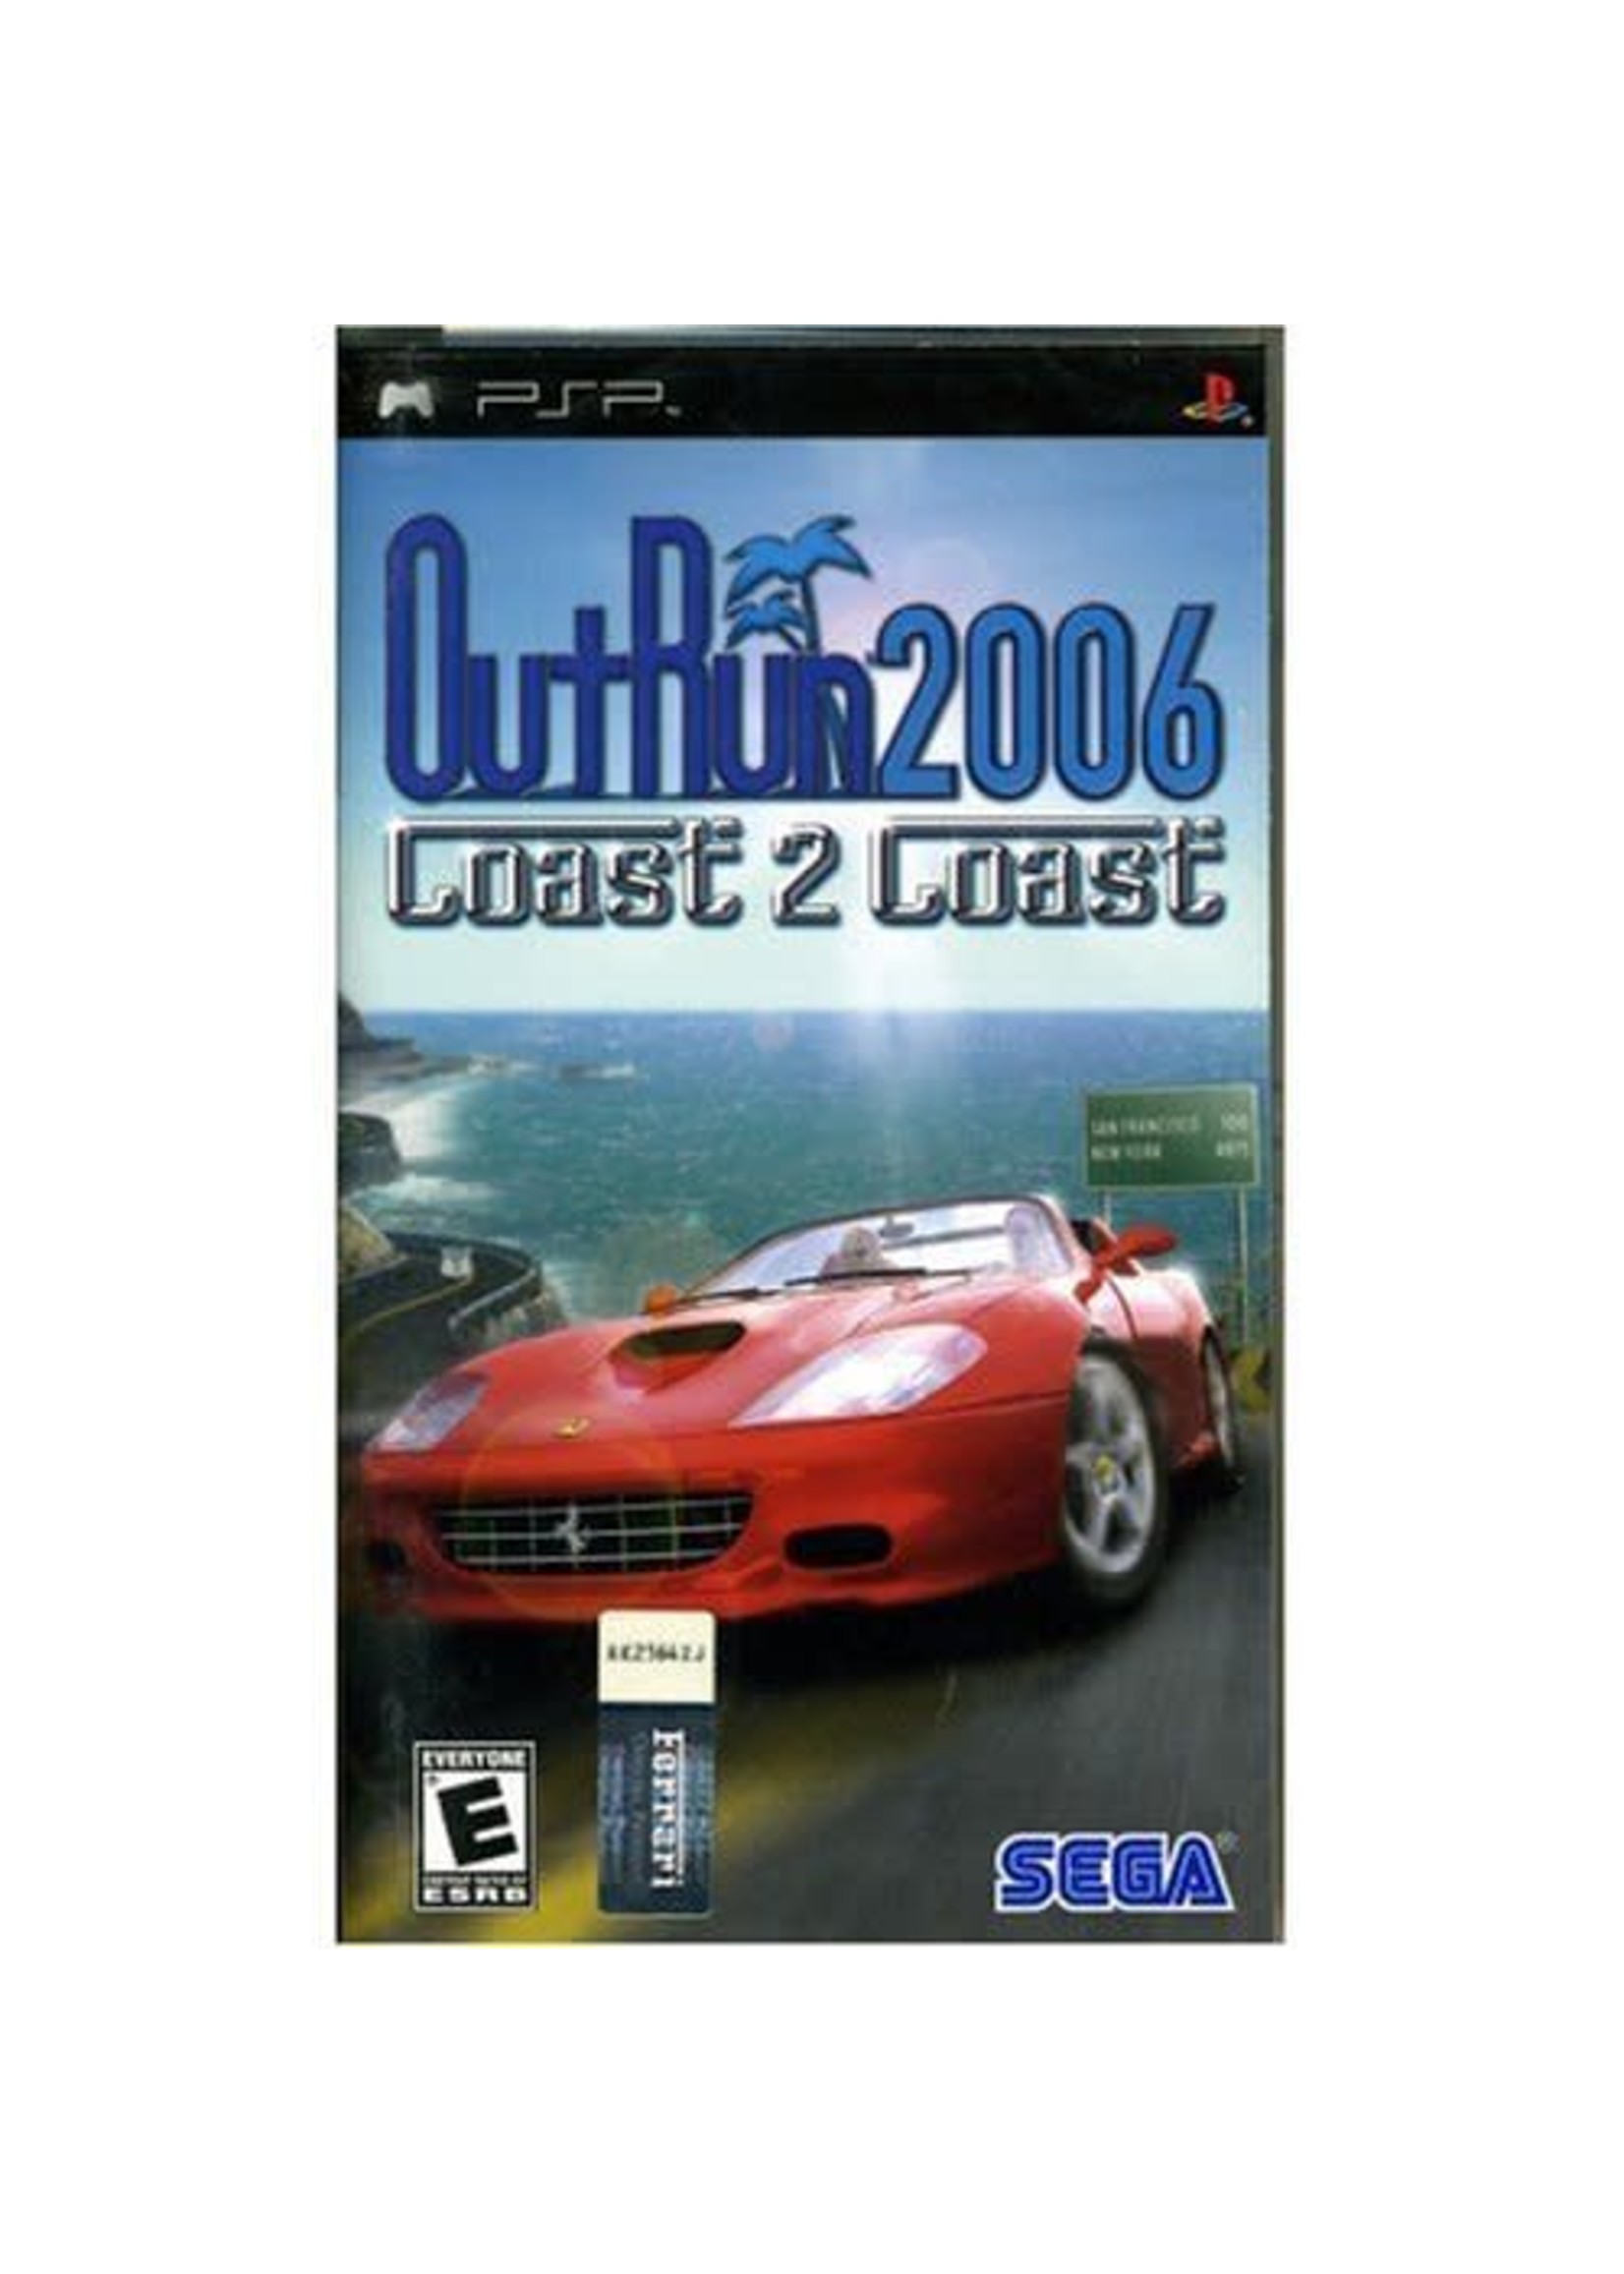 2006 coast 2 coast. Outrun 2006 Coast 2 Coast. Outrun 2006 PSP. Outrun 2006 Coast 2 Coast обложка. Outrun 2006 Coast 2 Coast PSP.